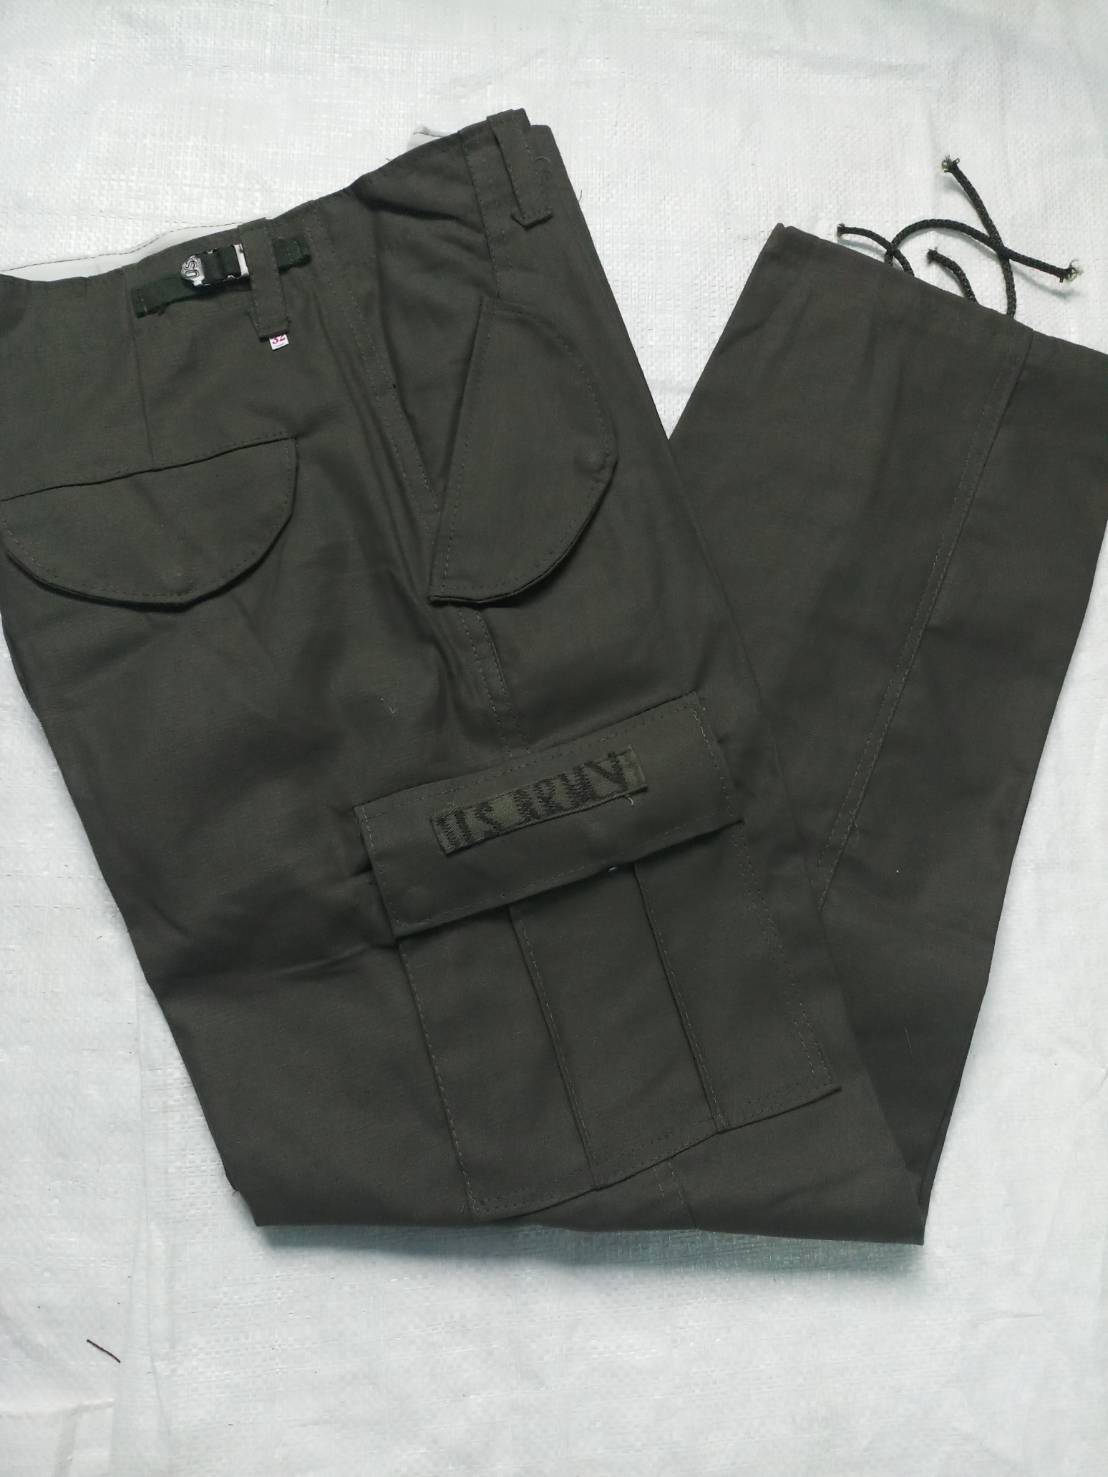 กางเกงทหาร กางเกงคาร์โก้สีพื้น กางเกงคาร์โก้ชาย กางเกงใส่ลุยป่า กางเกงขายาว กางเกงสีพื้นเขียวทหาร กางเกงสีพื้นดำ  กางเกงหลายกระเป๋า